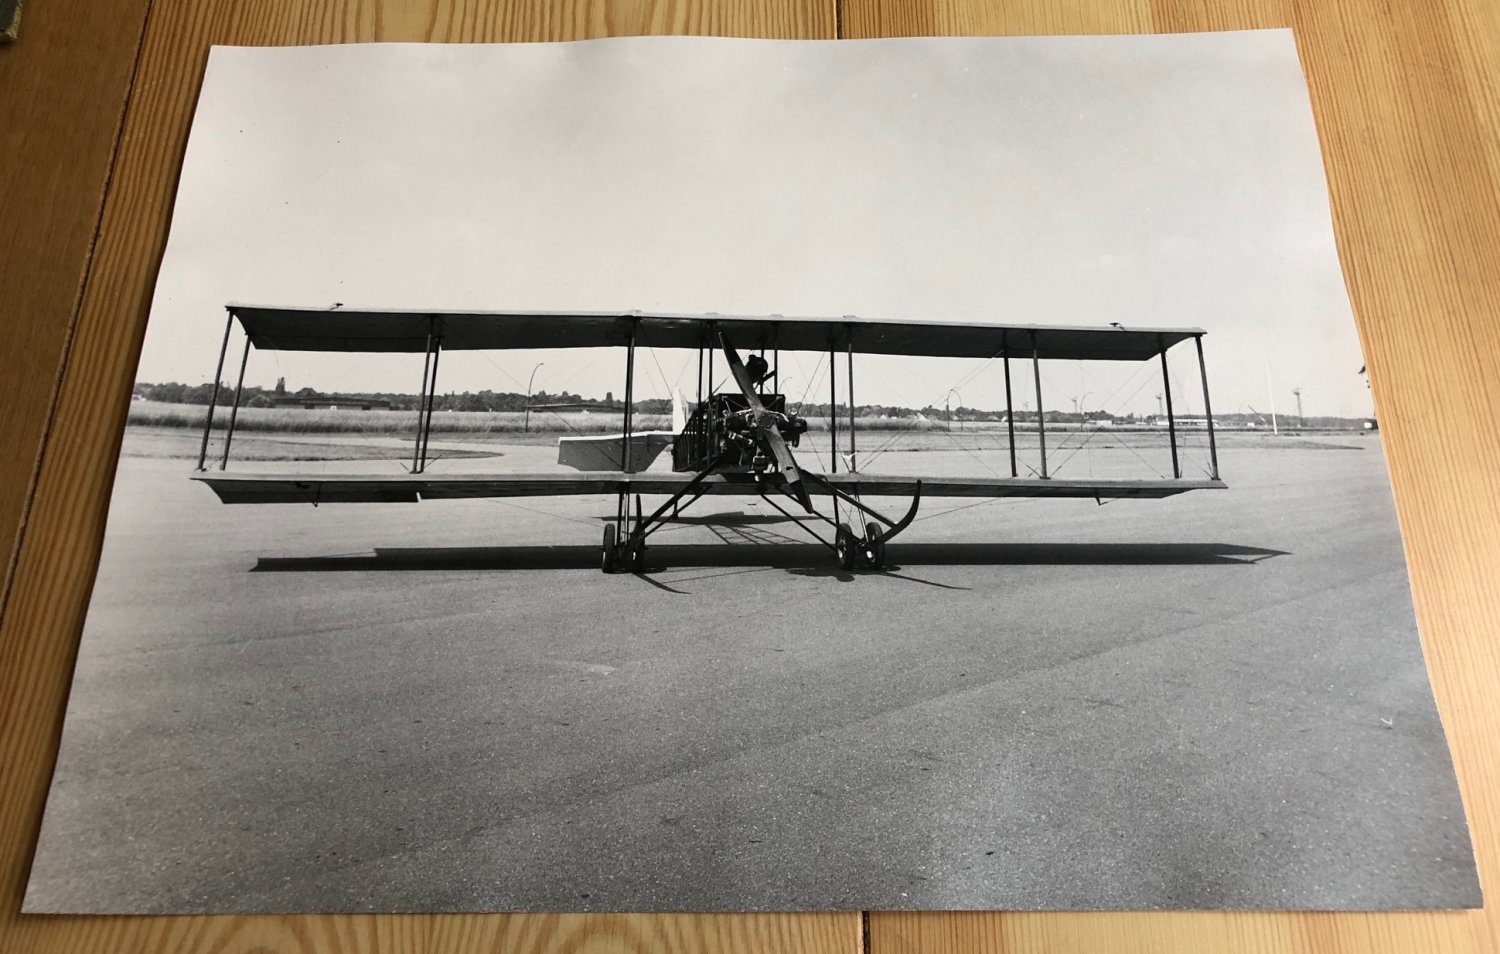 ESCH, Winfried (Fotograf):  3 großformatige Original-Photographien eines historischen Flugzeugs oder Flugzeugnachbaus. (Historische Photographien eines Doppeldecker-Flugzeugs aus den Anfängen der Fluggeschichte). 